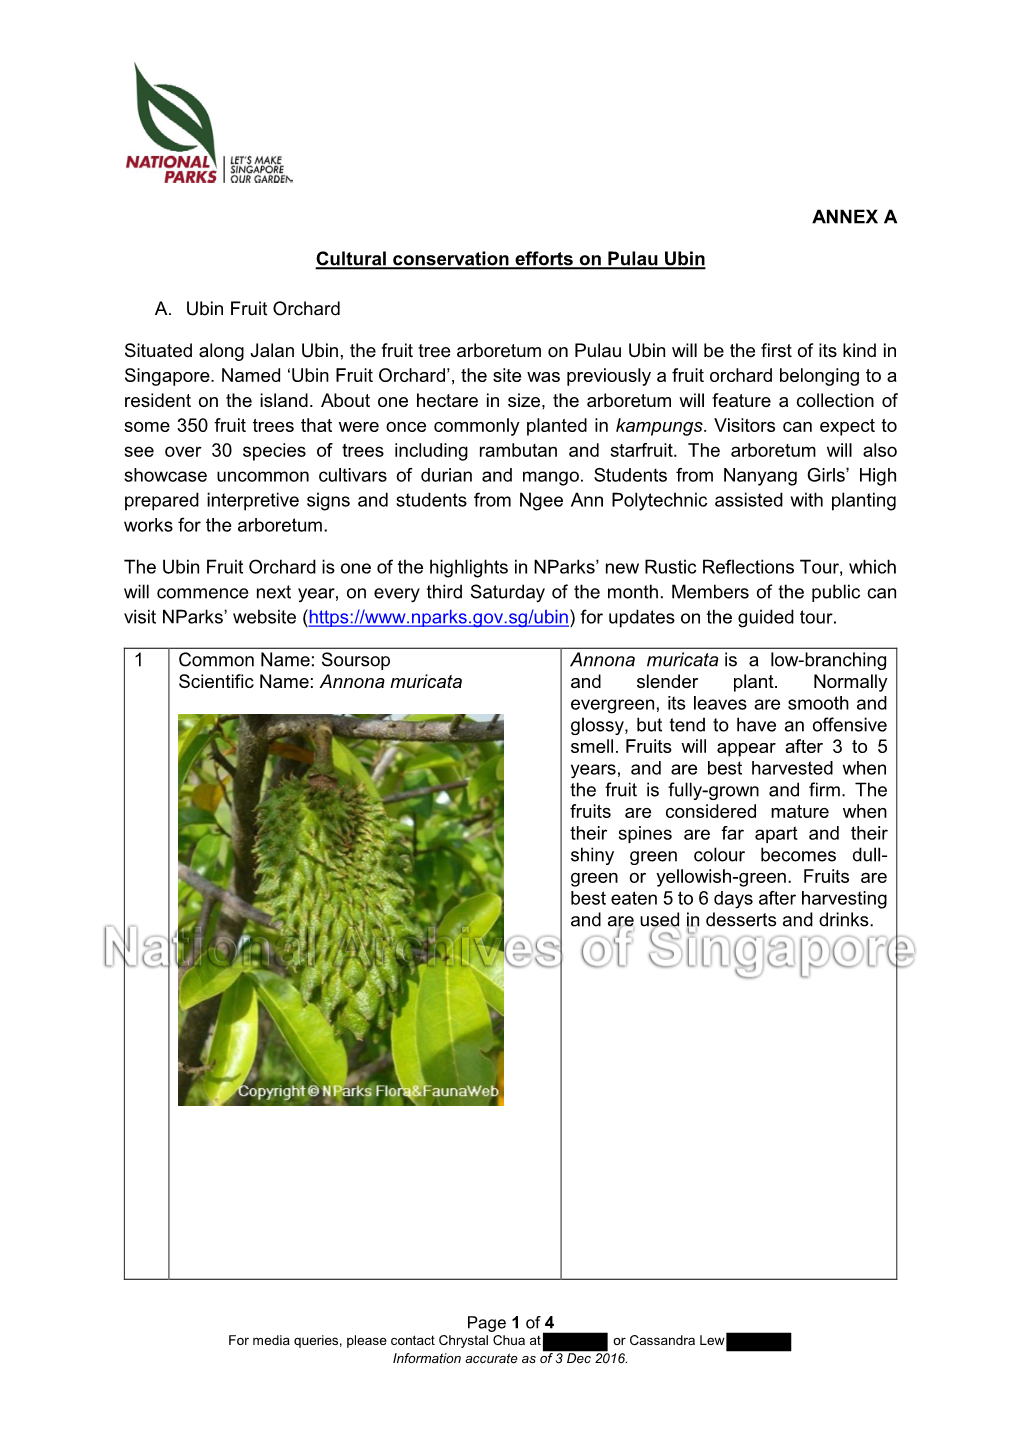 ANNEX a Cultural Conservation Efforts on Pulau Ubin A. Ubin Fruit